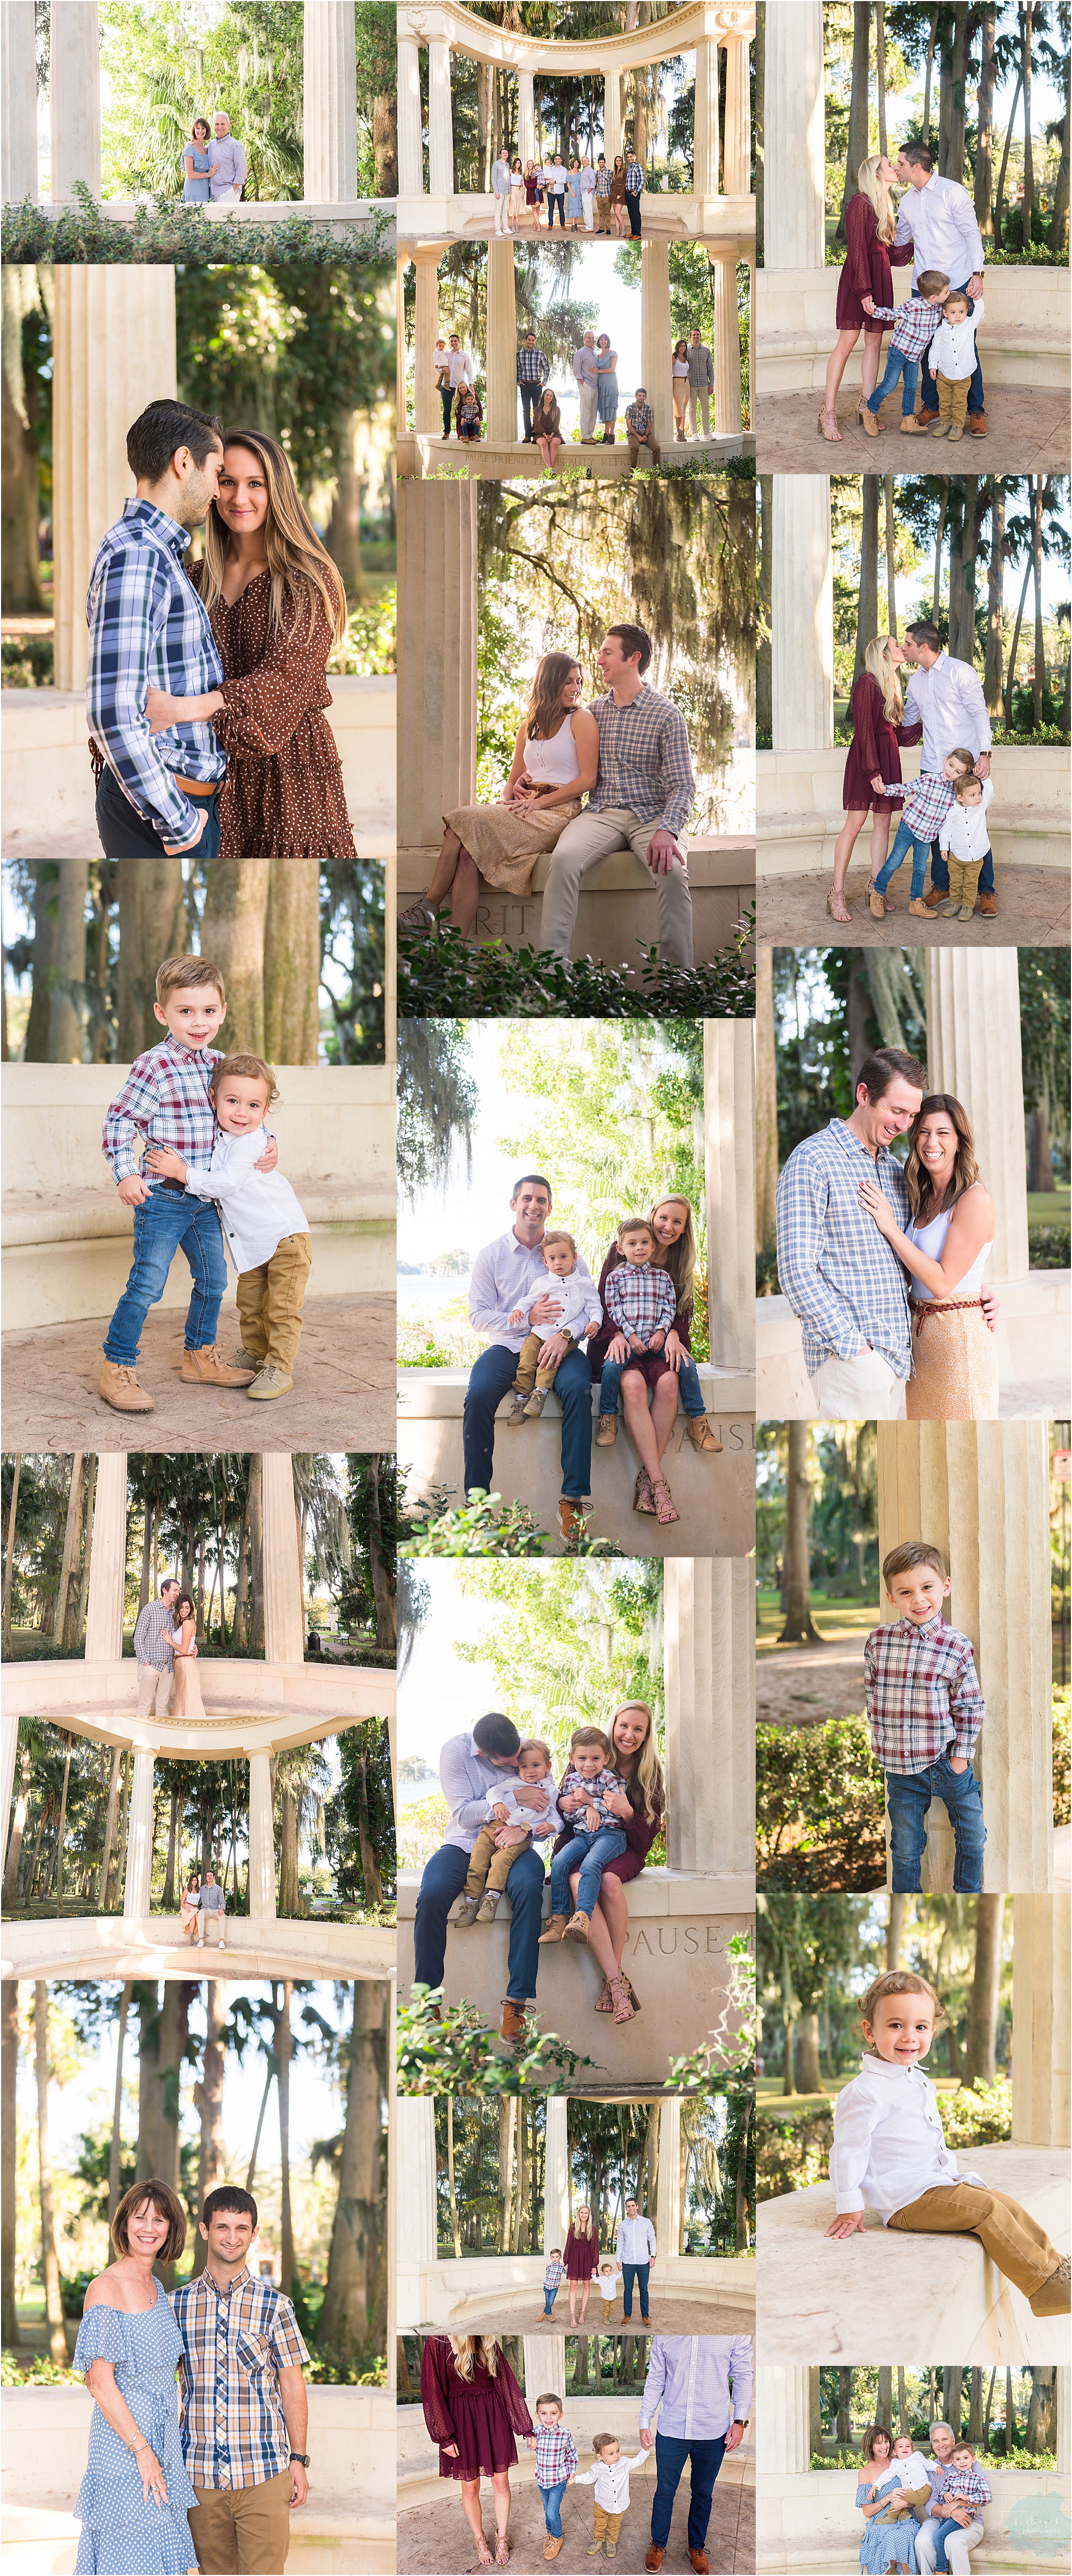 Kraft-azalea-park-family-portraits